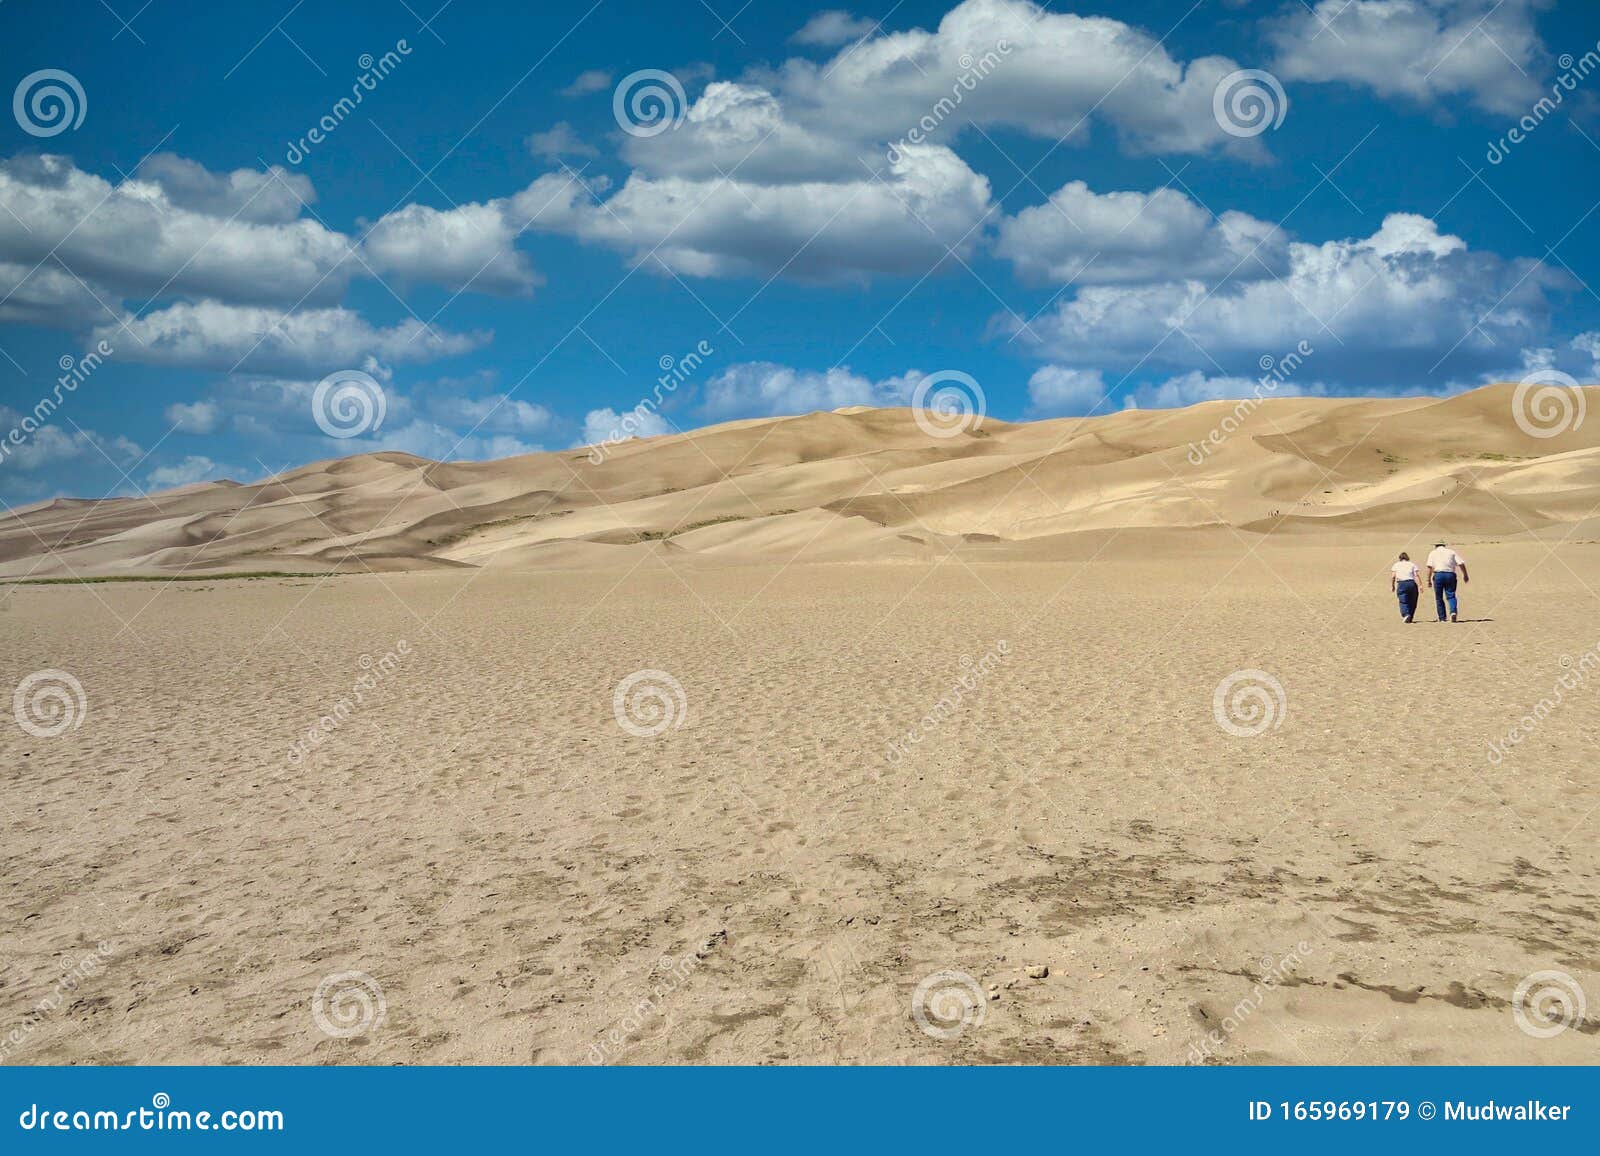 vast sand dunes near alamosa